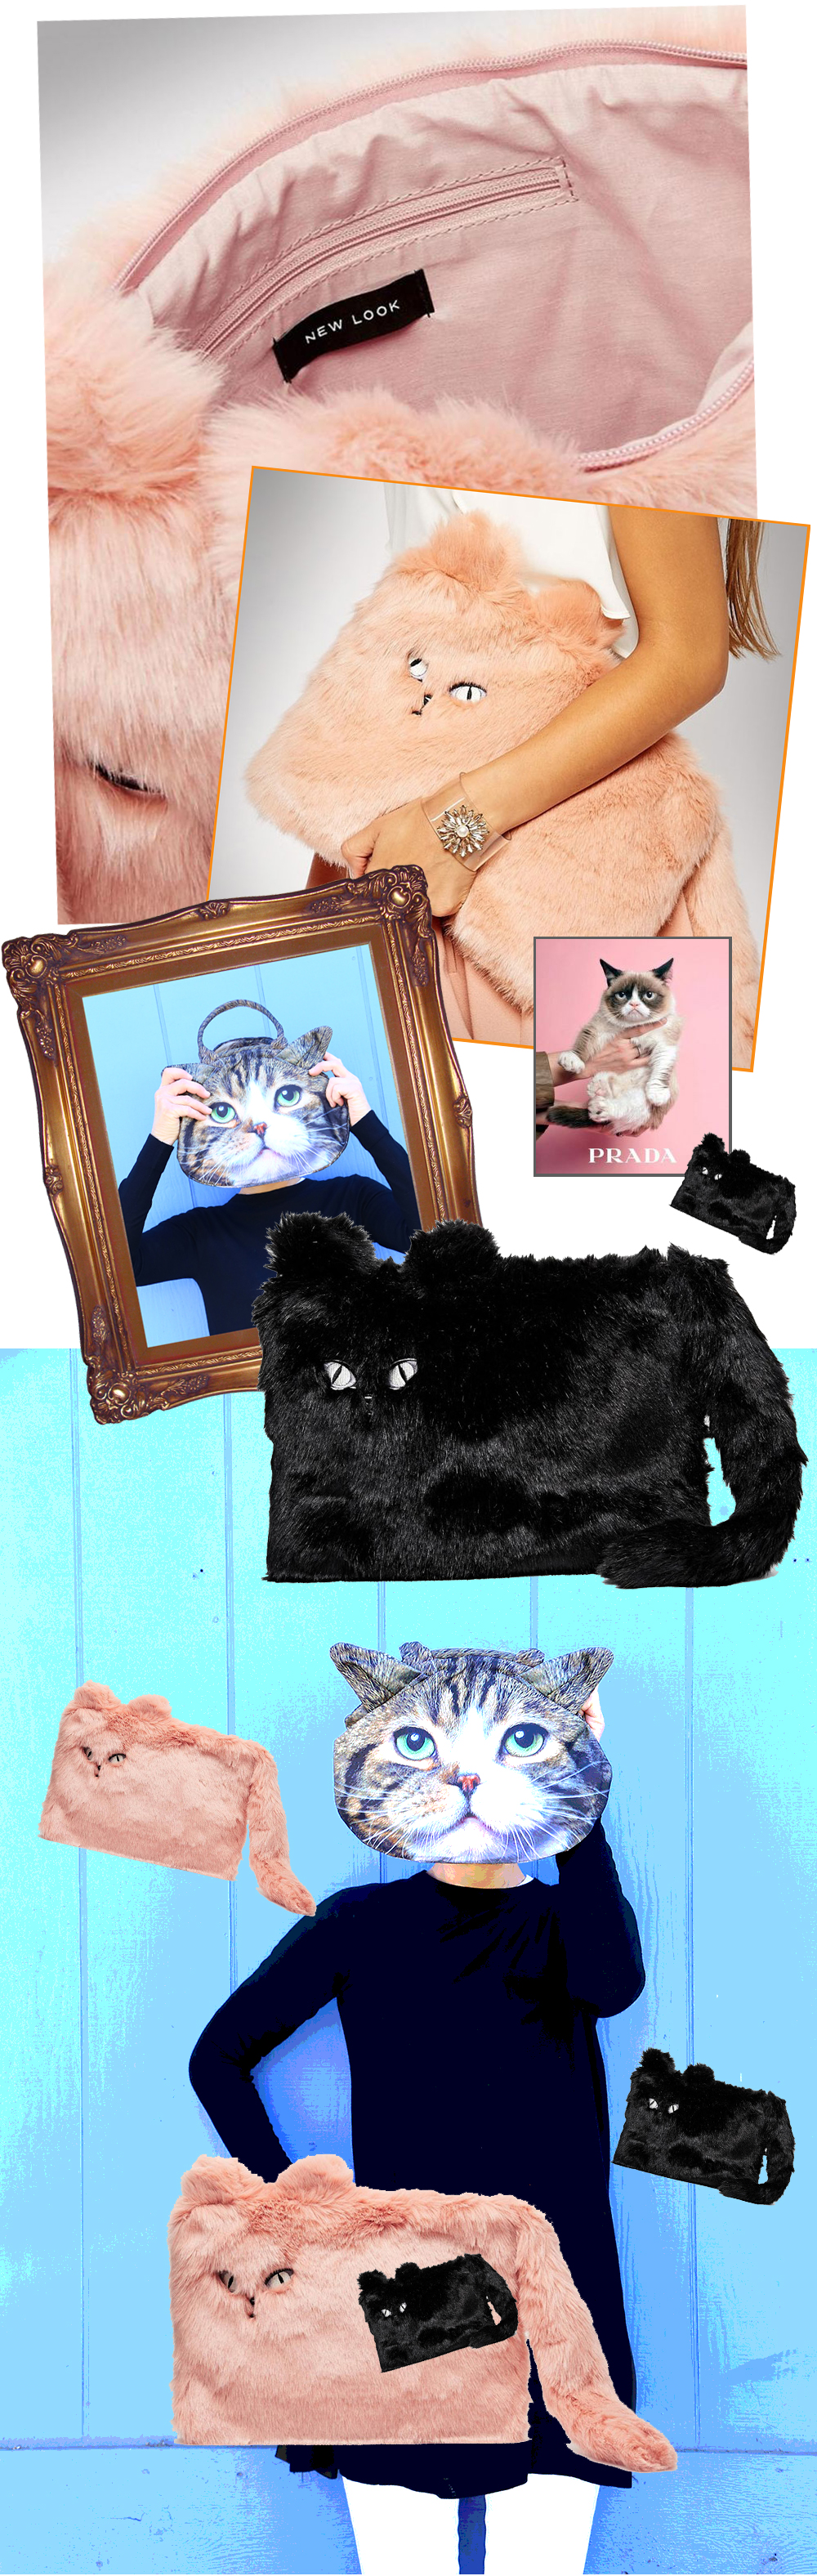 laura-dunn-furry-cat-clutch-purse